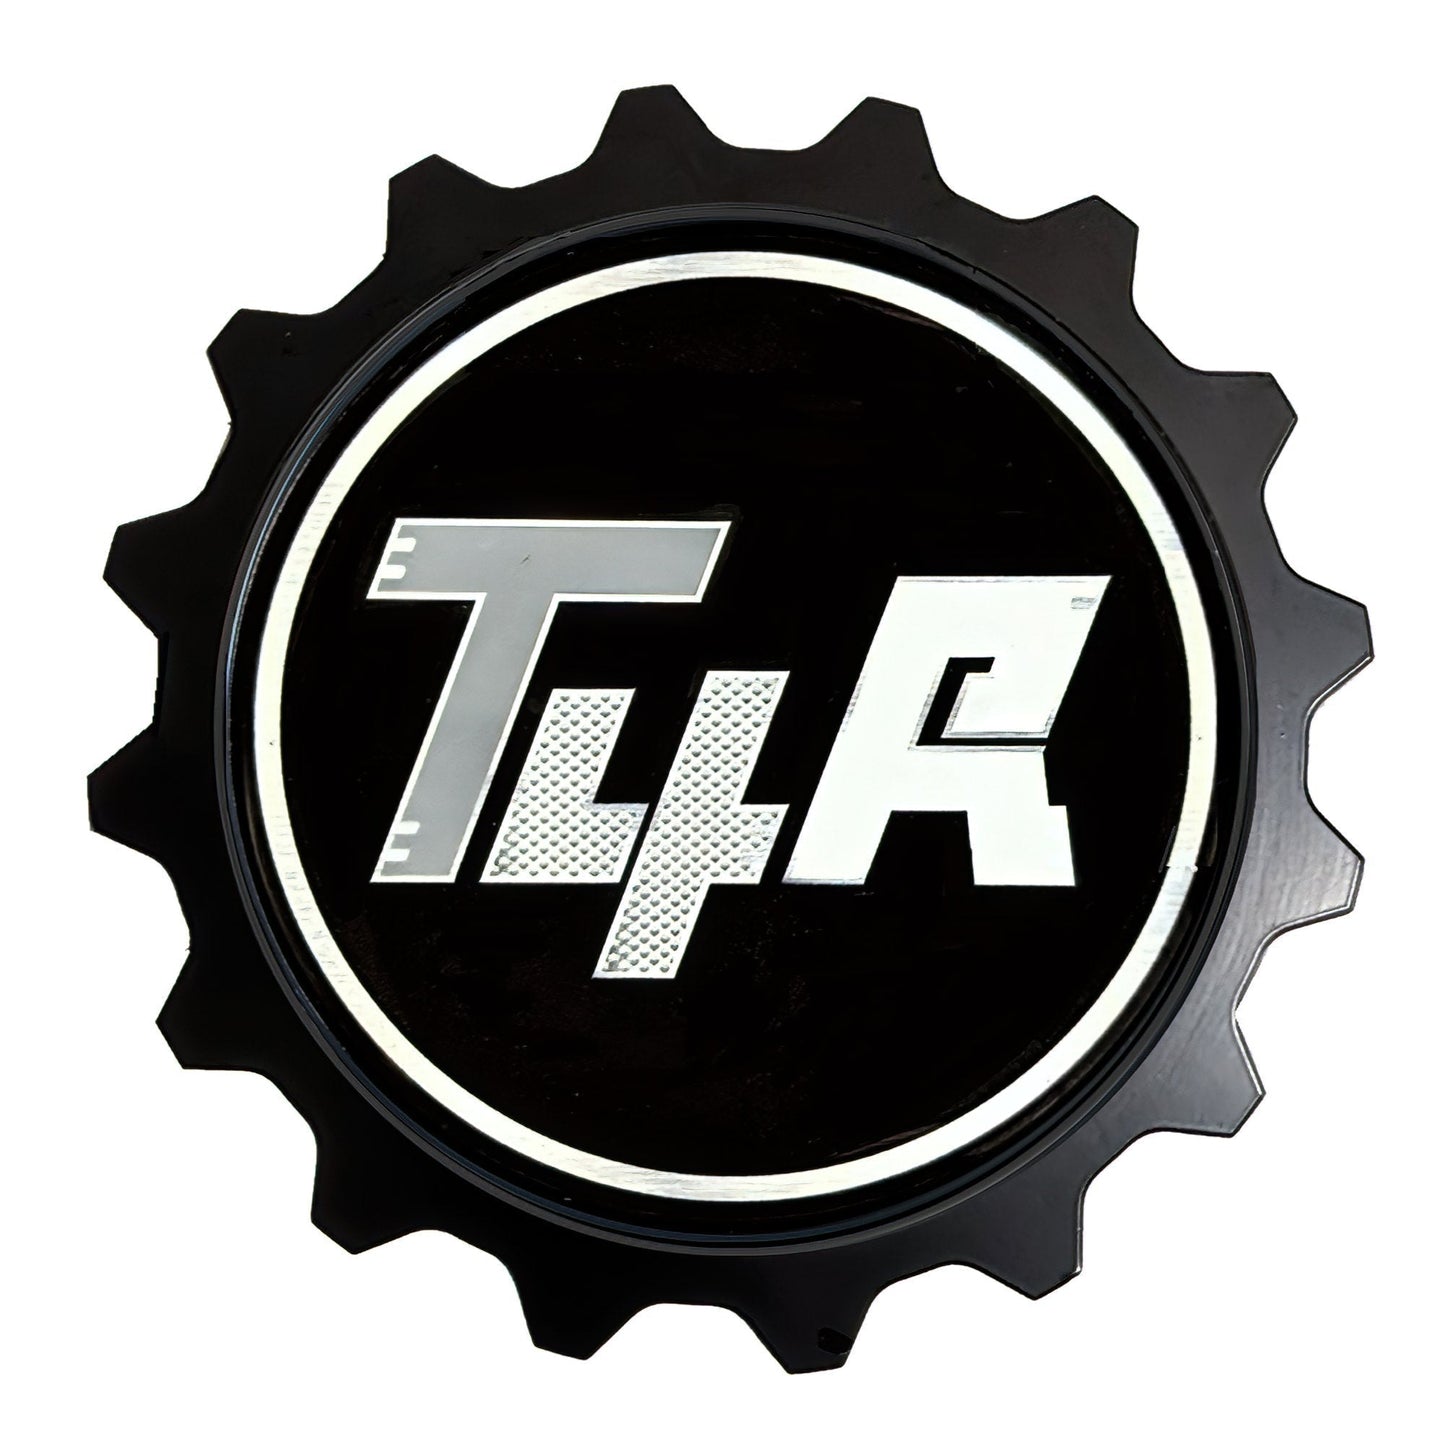 Grille Badge Emblem Aluminum Tri-Color Fits 4Runner TRD Pro, Trail, SR5